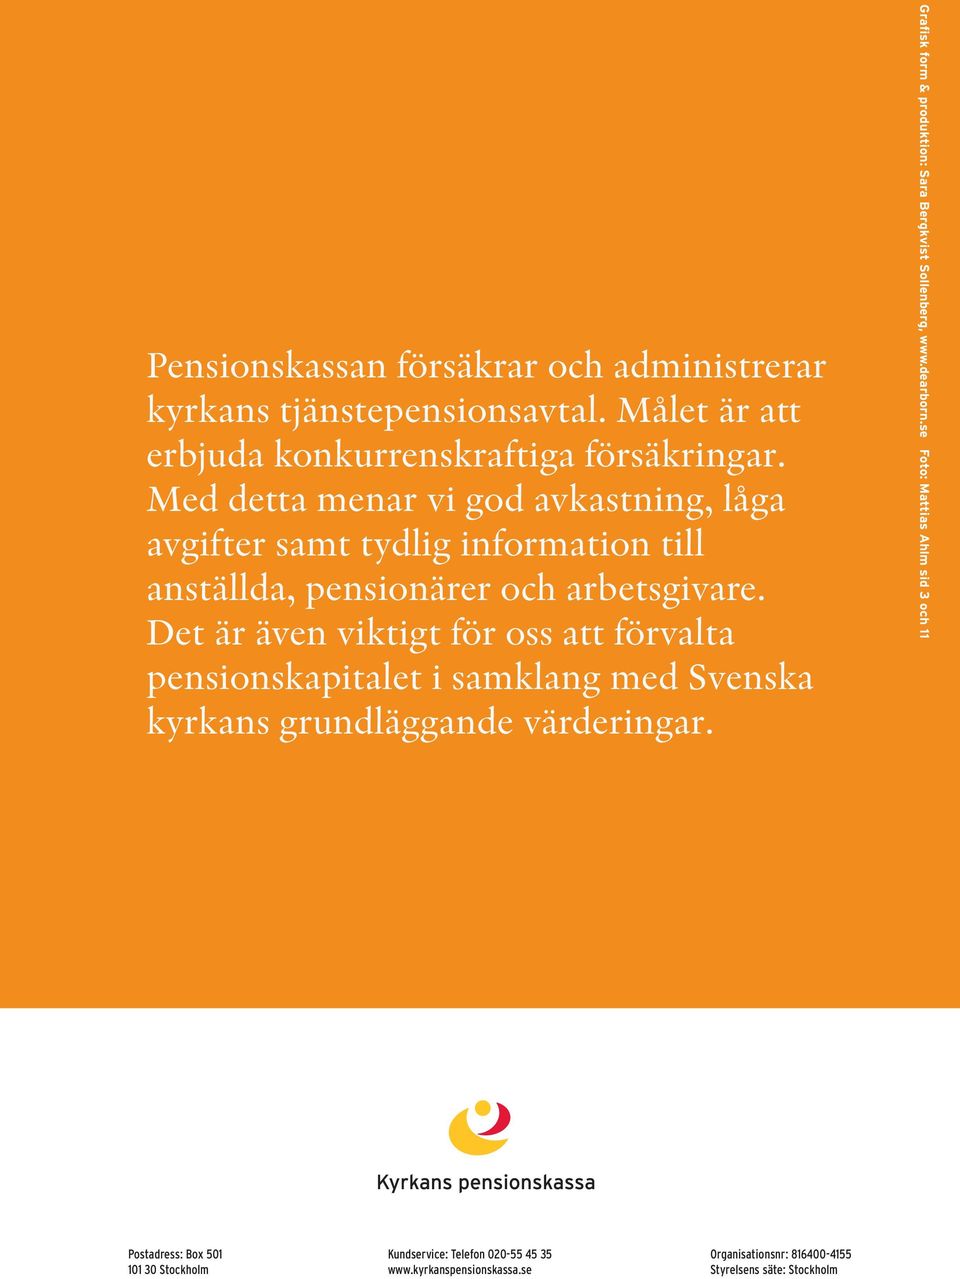 Det är även viktigt för oss att förvalta pensionskapitalet i samklang med Svenska kyrkans grund läggande värderingar.